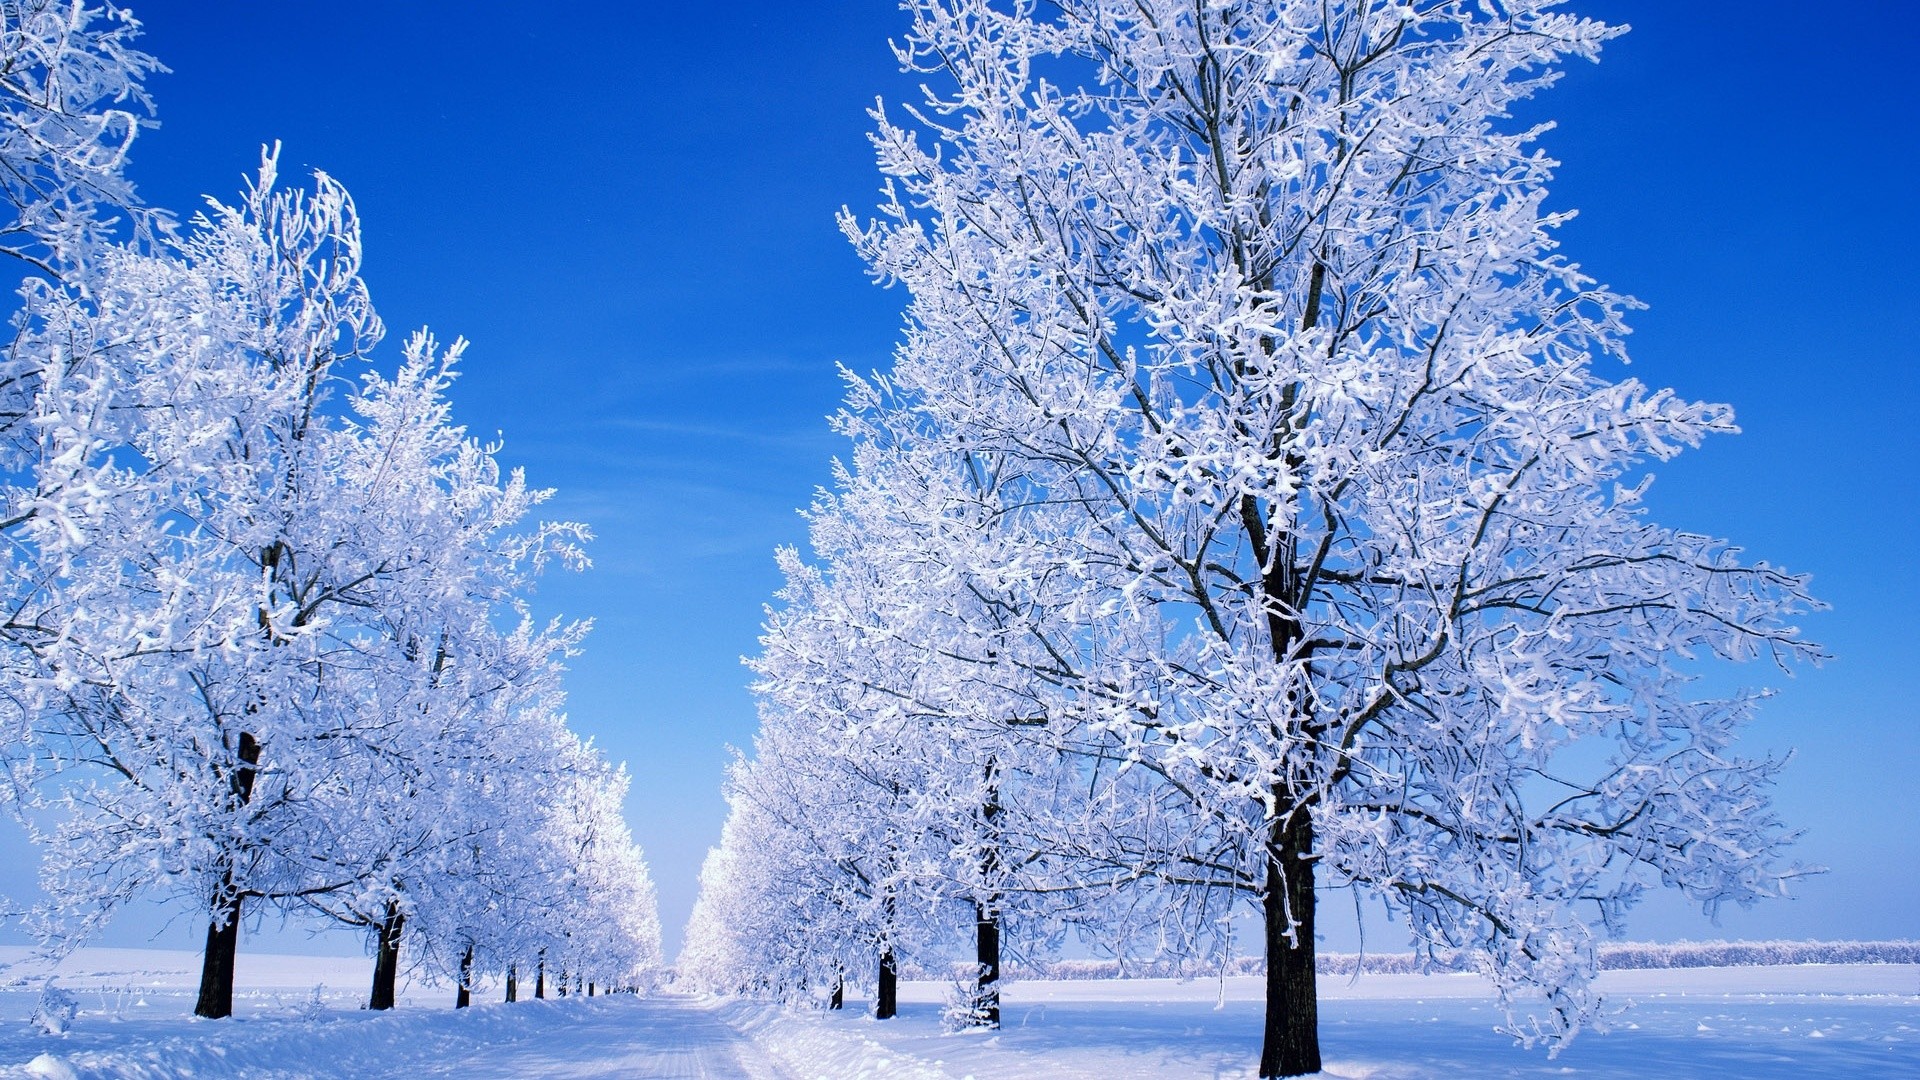 Winter Scene Desktop Wallpaper - High Resolution Snowy Trees , HD Wallpaper & Backgrounds